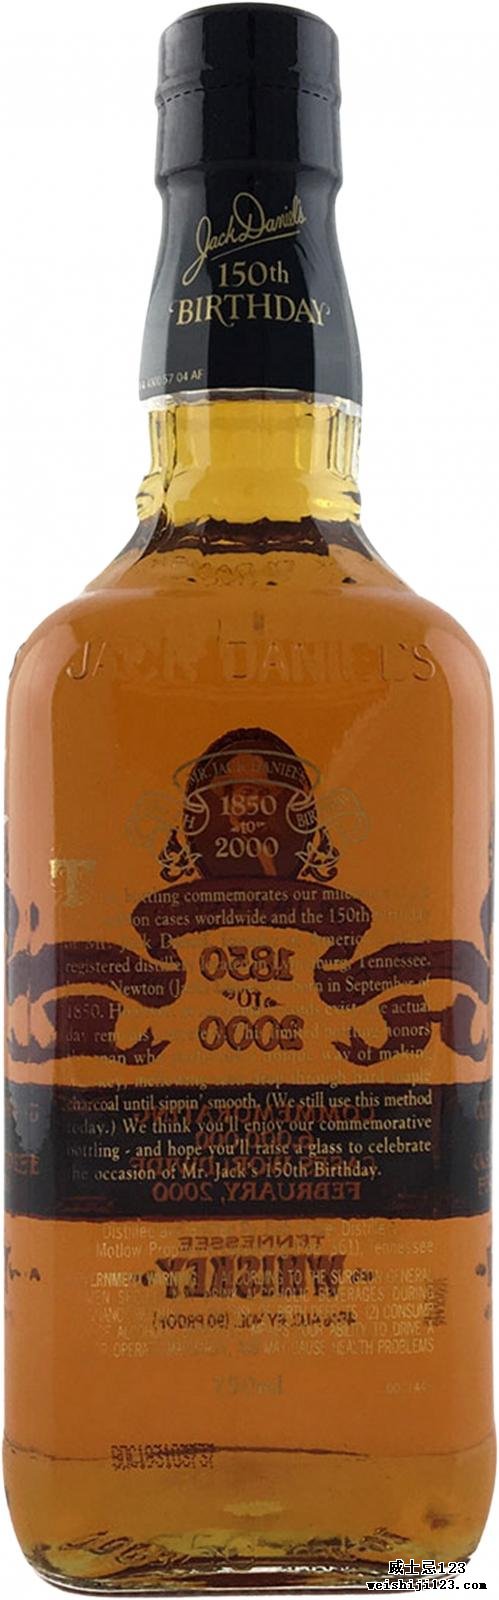 Jack Daniel's Mr. Jack Daniel's 150th Birthday